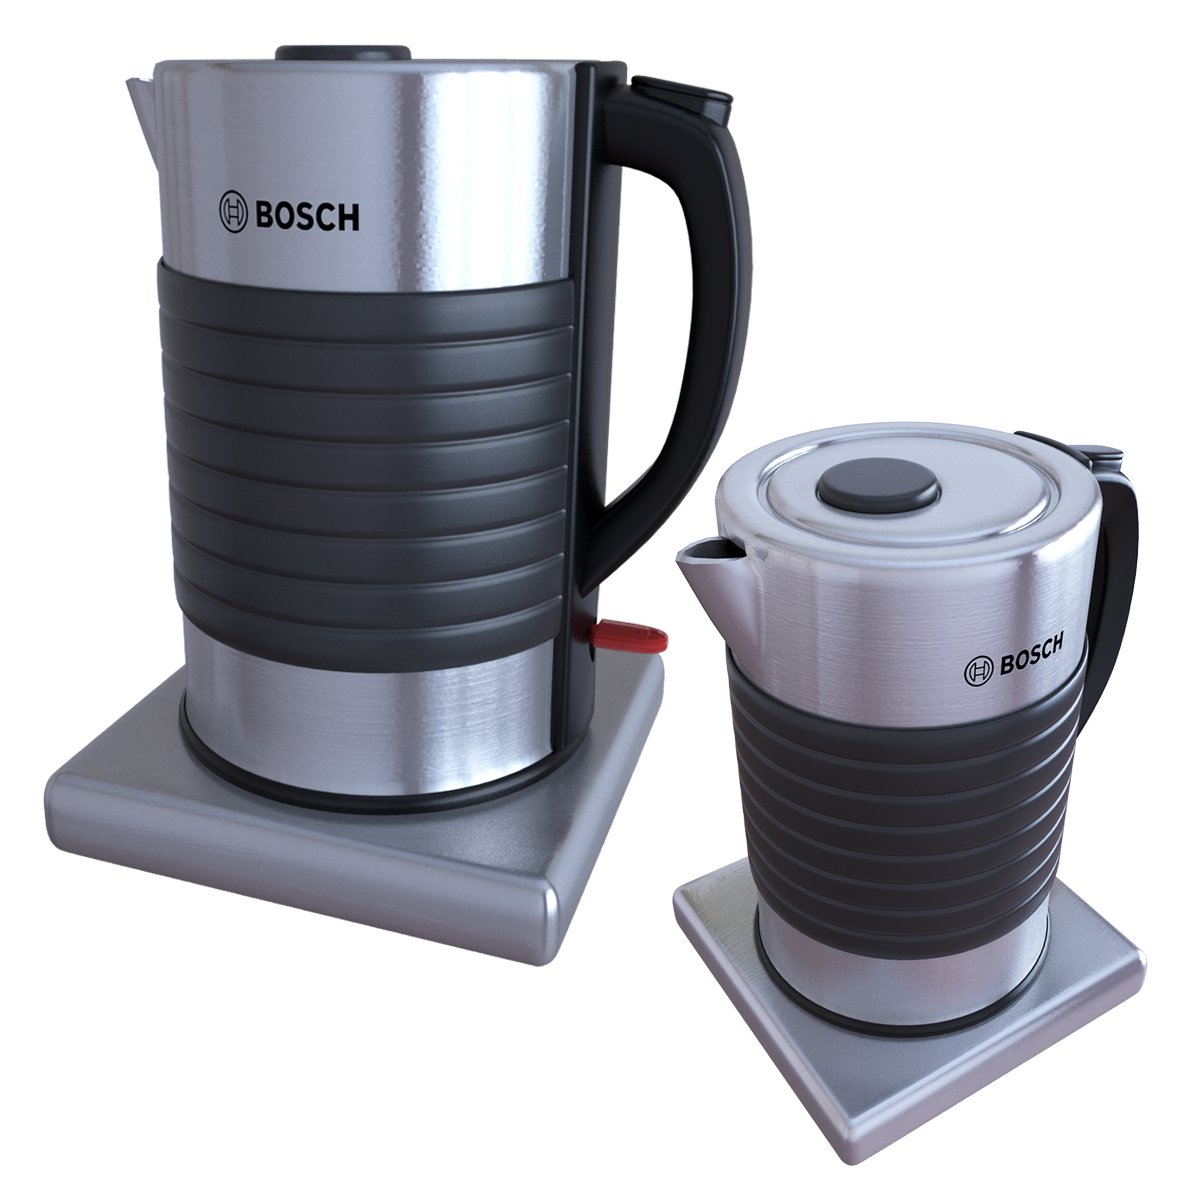 Bosch - Eurodesign